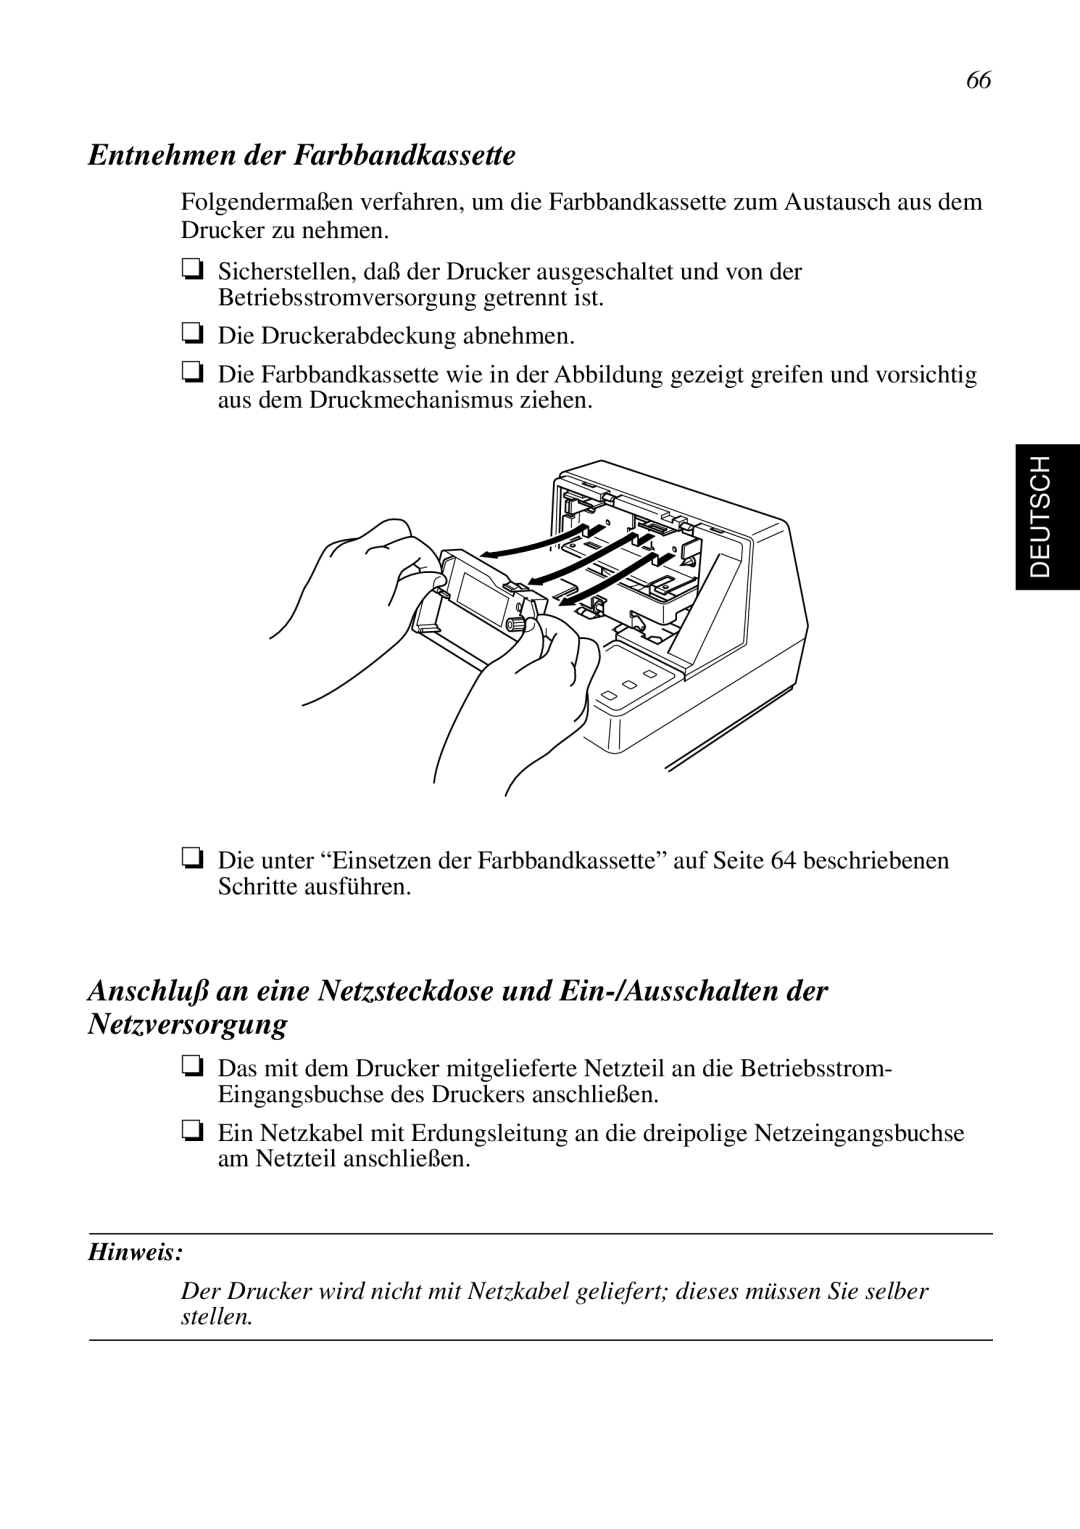 Star Micronics SP298 user manual Entnehmen der Farbbandkassette, Deutsch, Hinweis 